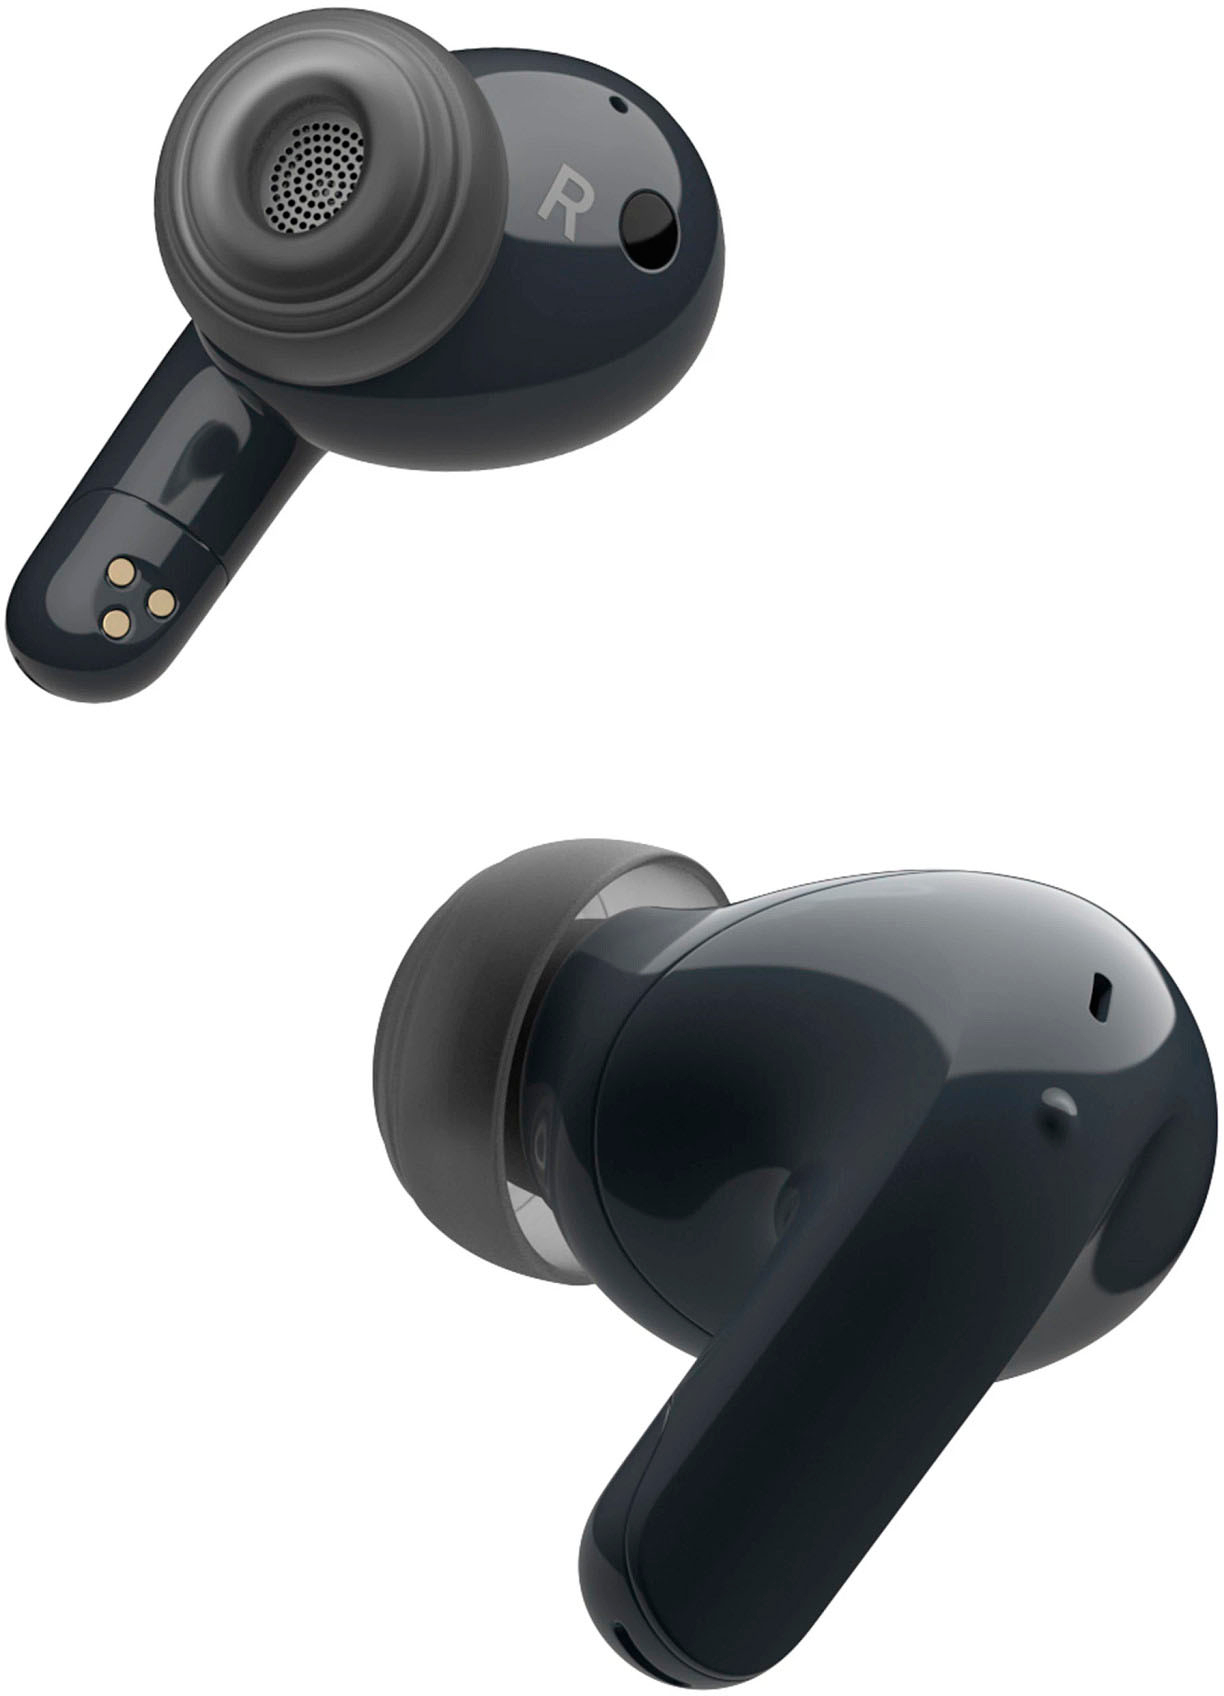 LG Tone Free DT90Q écouteurs Bluetooth Intra-Auriculaires avec Dolby Atmos,  Technologie MEDIRIAN, ANC (Réduction sonore Active), UVnano+, Noir.